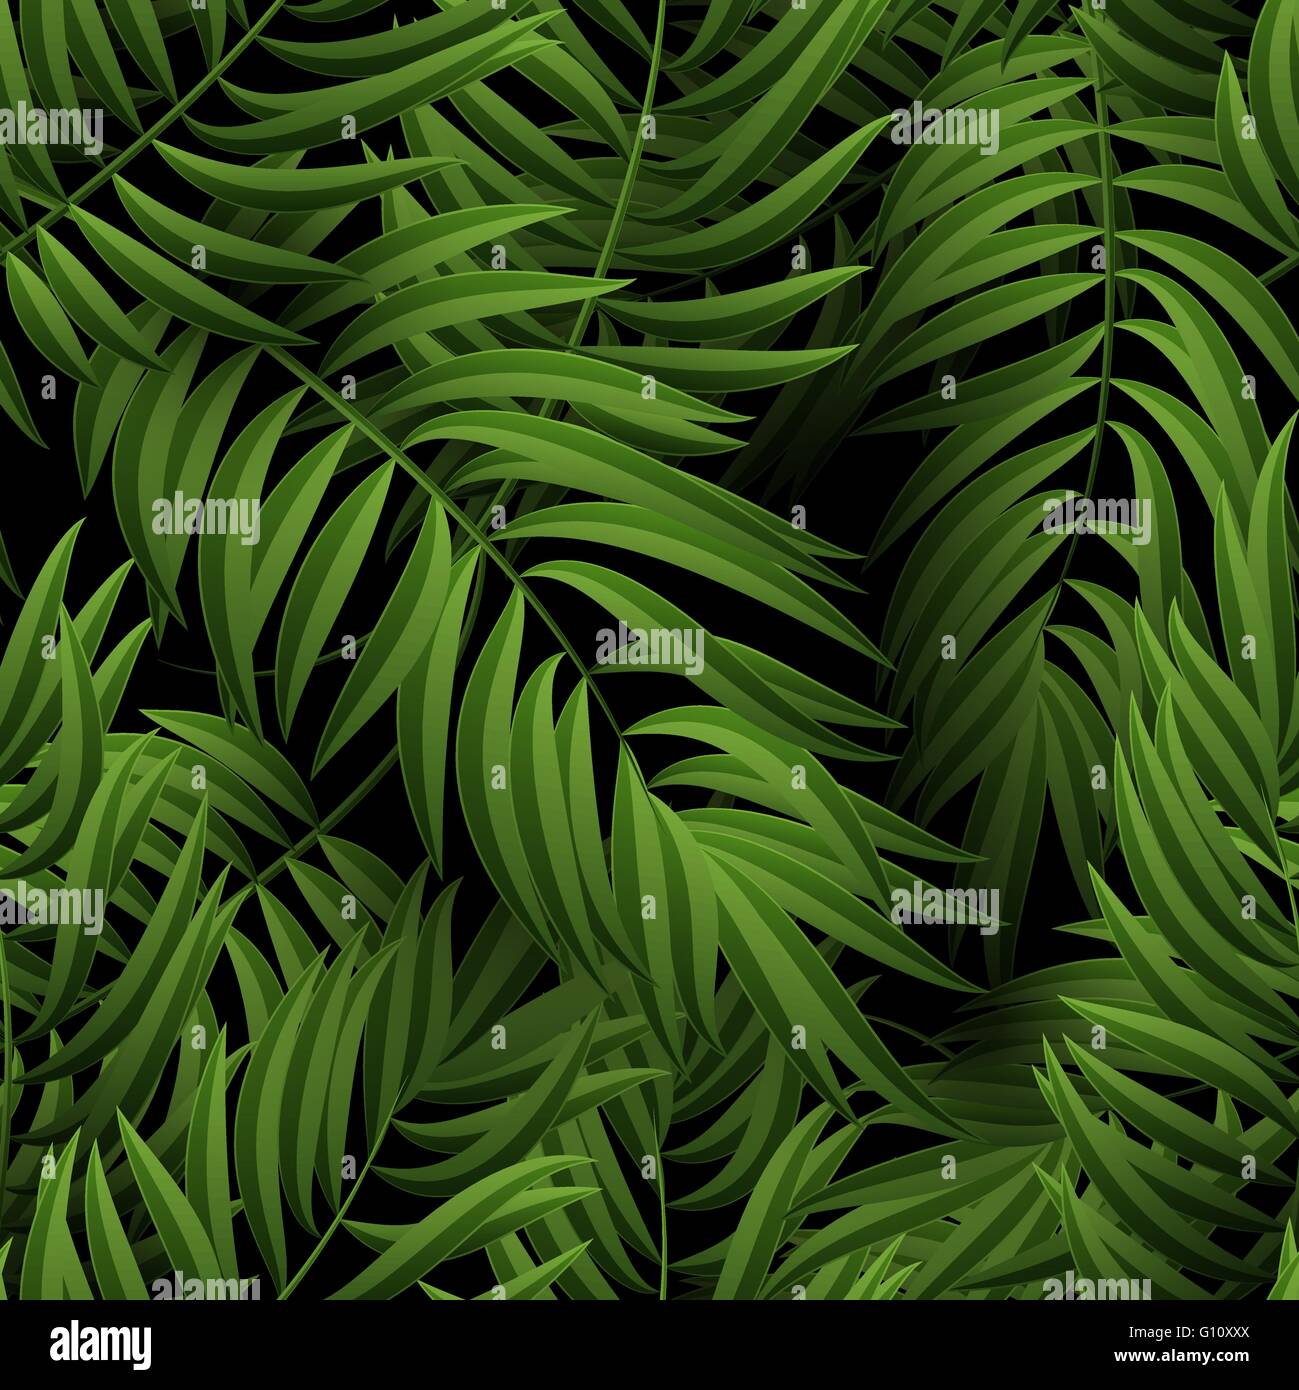 Seamless giungla tropicale motivo floreale con fronde di palma. Illustrazione Vettoriale. Verde foglie di palmo pattern su sfondo nero Illustrazione Vettoriale